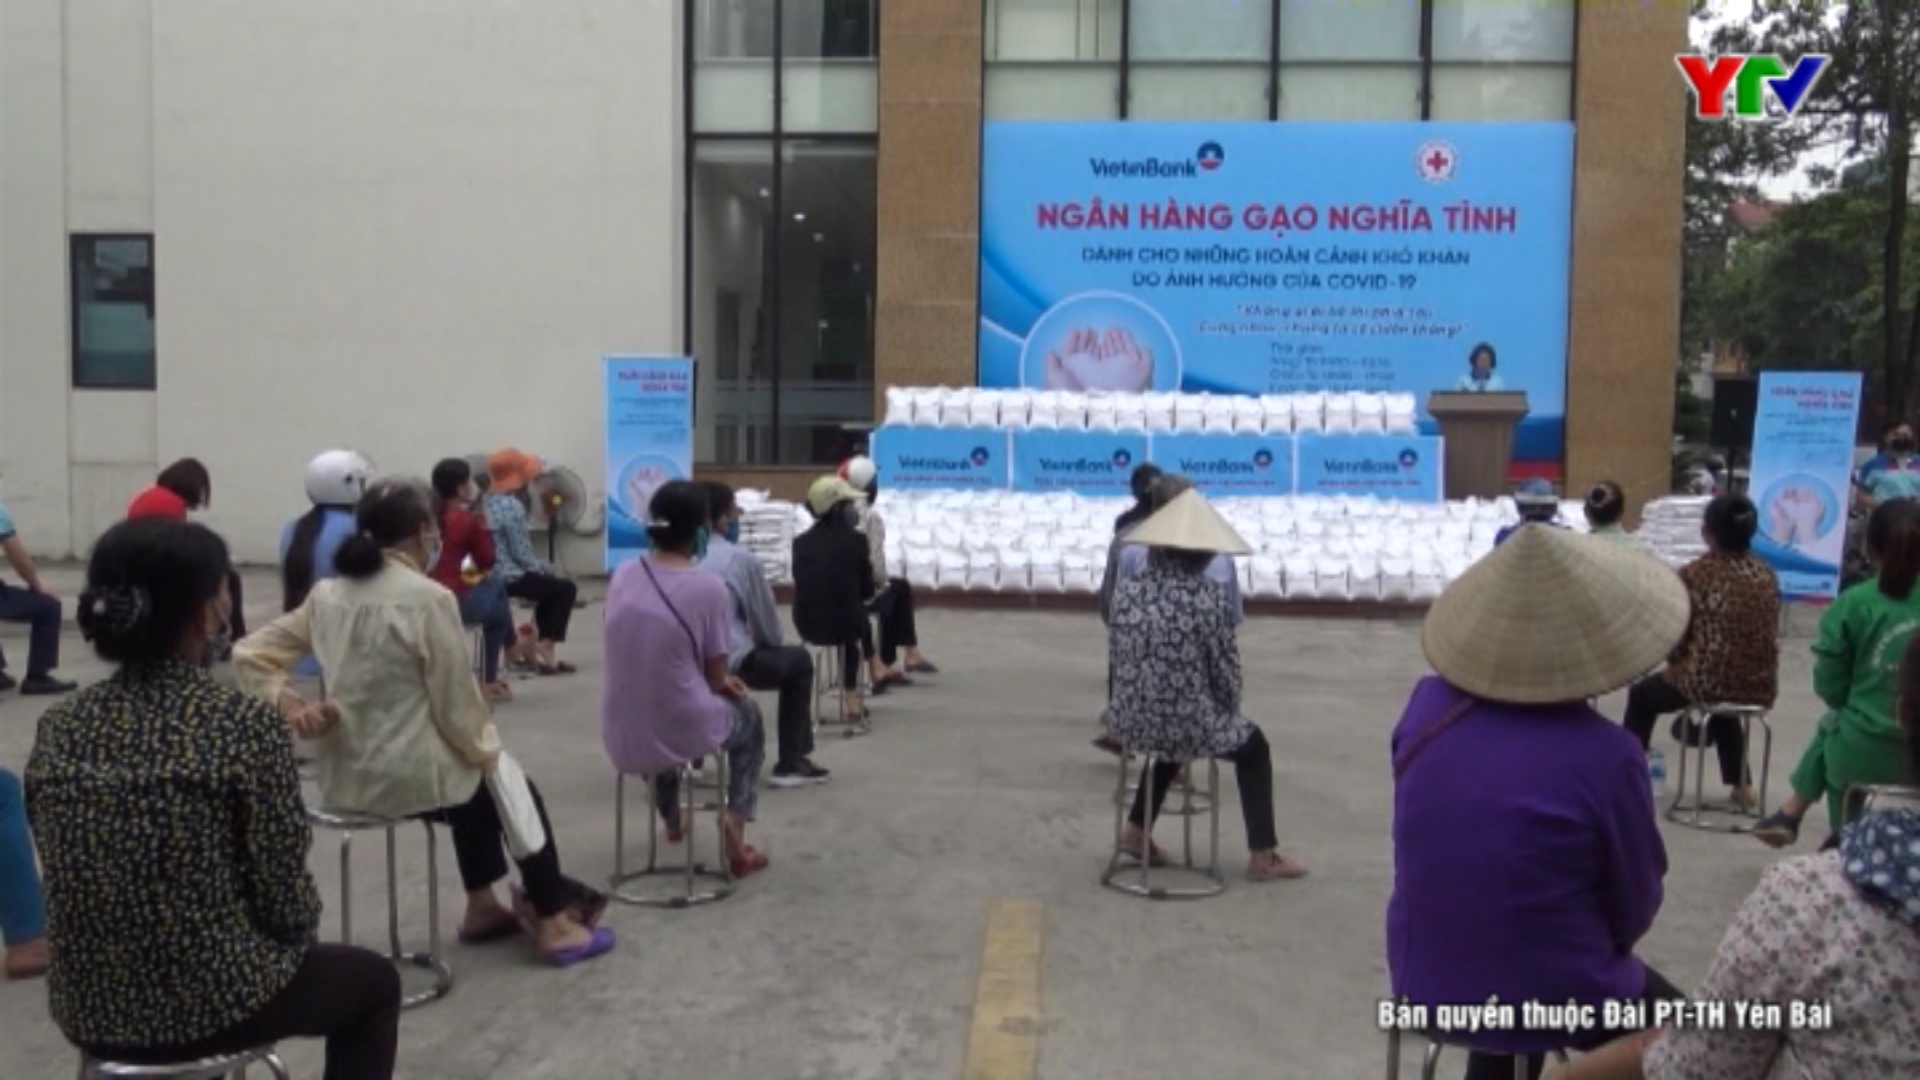 Ngân hàng TMCP Công thương Việt Nam, chi nhánh Yên Bái phát gạo miễn phí cho các hộ bị ảnh hưởng do dịch bệnh COVID – 19